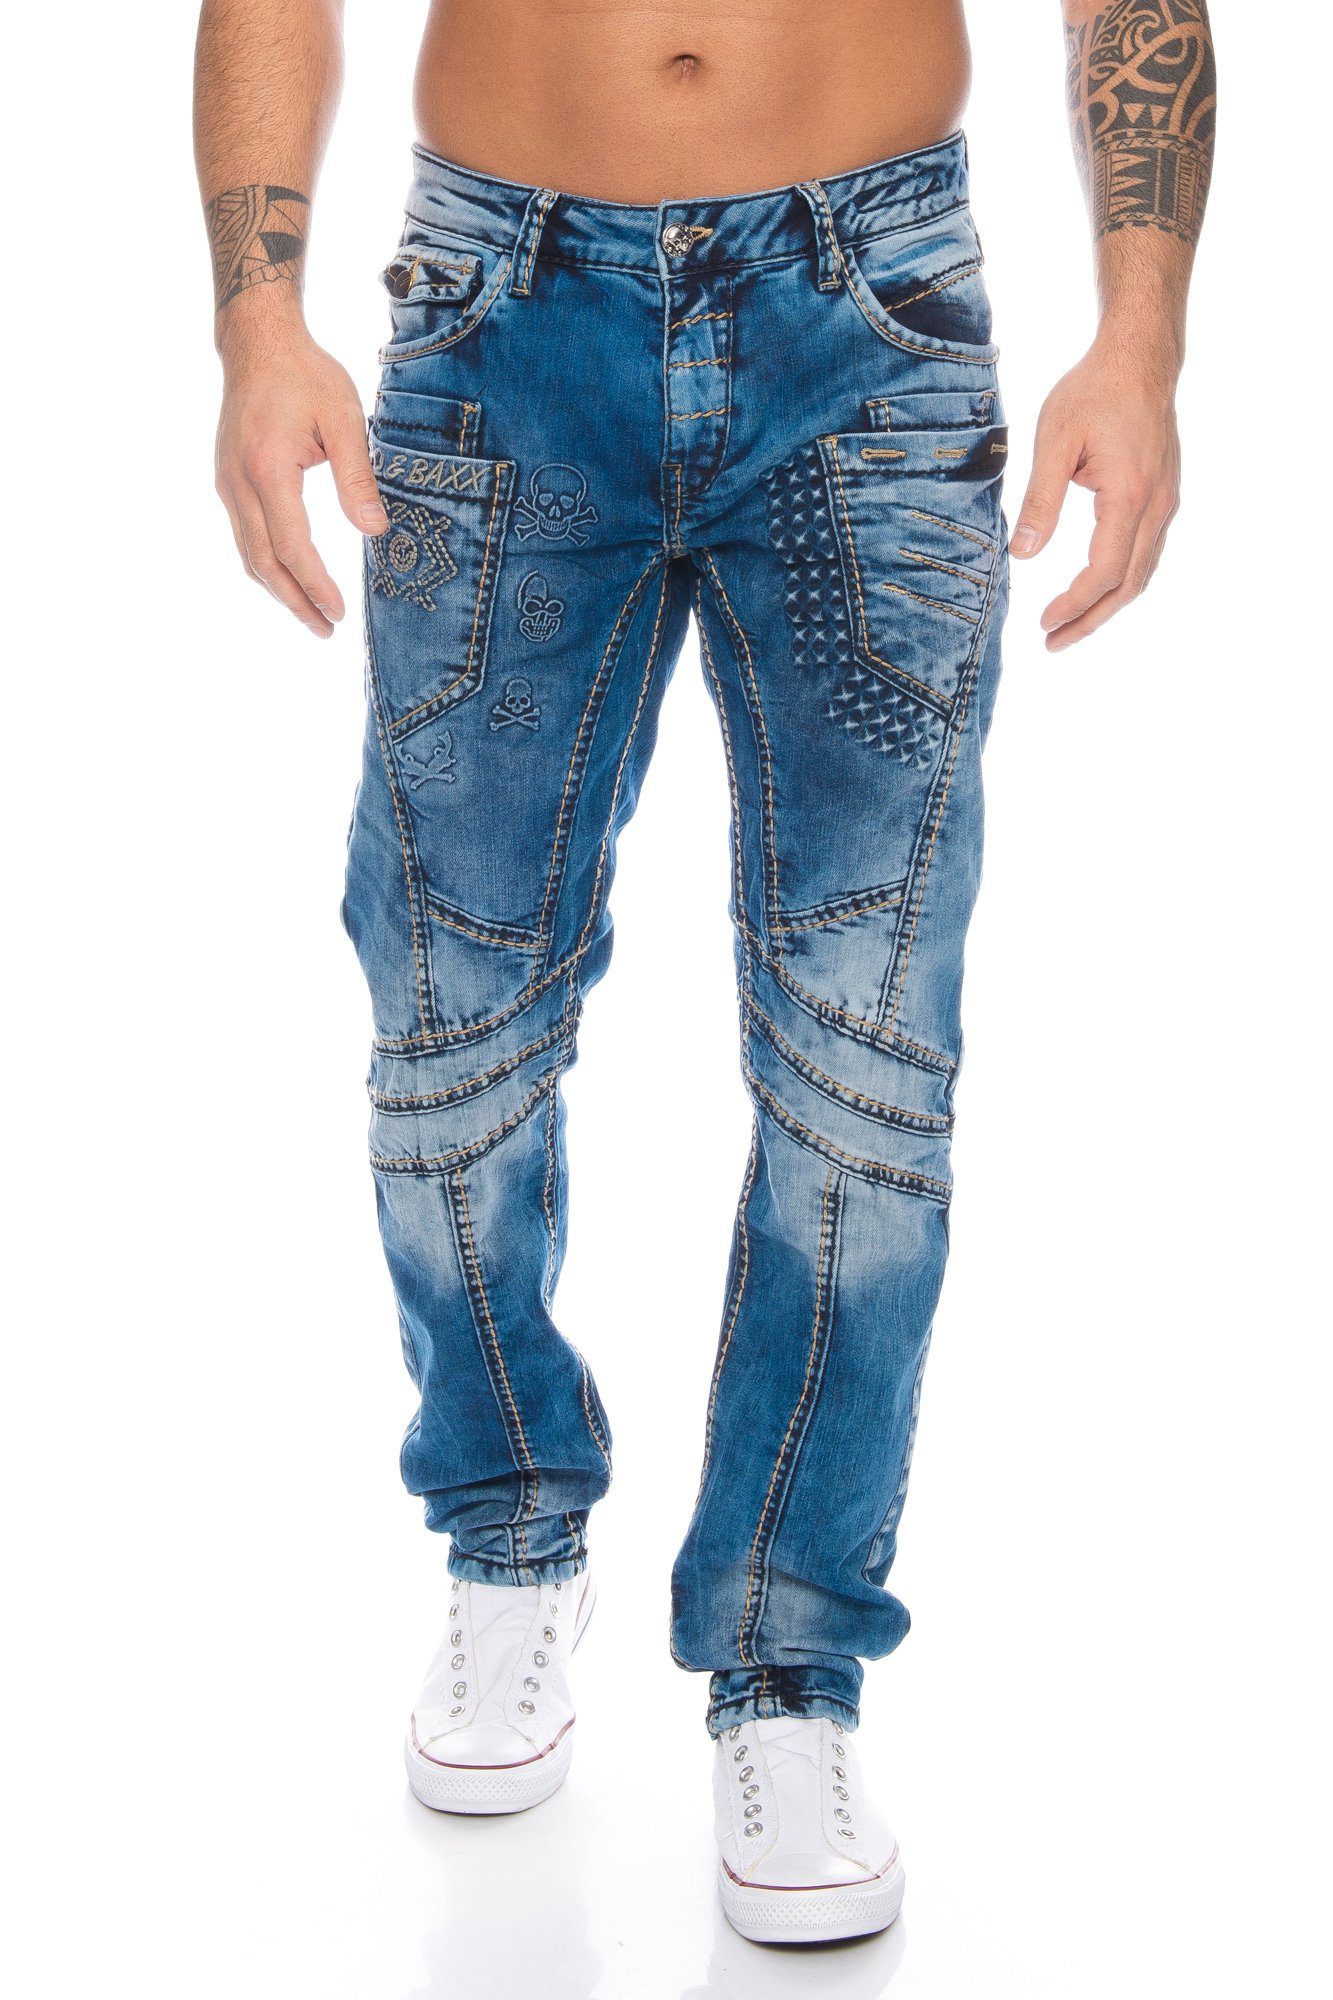 Cipo & Baxx Slim-fit-Jeans Herren Jeans Hose mit stylischem Nahtdesign Jeanshose mit extravaganter Nahtstruktur und Branding, Besonderer Tragekomfort dank Stretchanteil | Stretchjeans